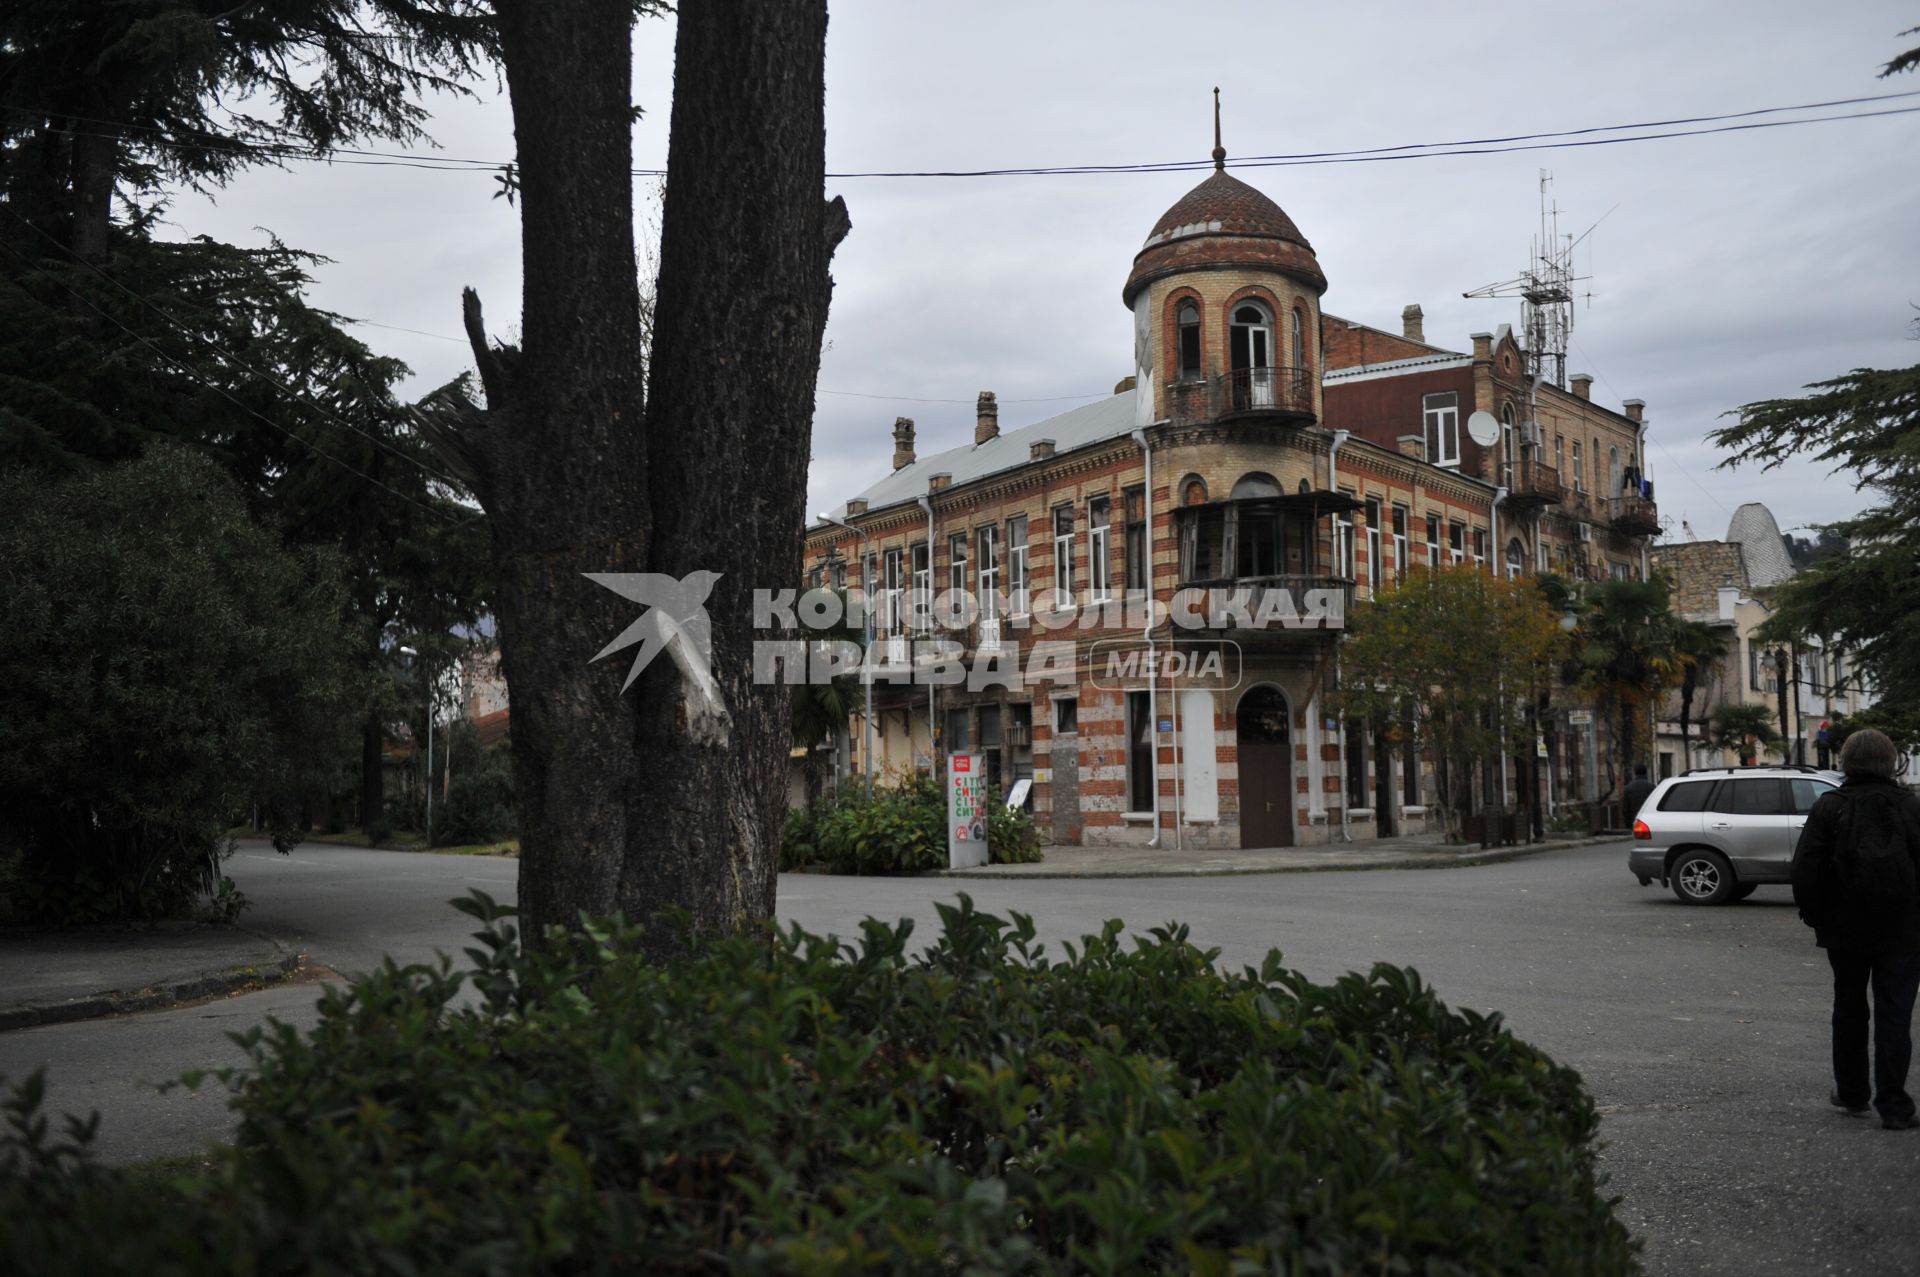 Абхазия. Сухум. Бывший дом братьев Ксандопуло, построенный в 1906 году. Здесь до революции располагался публичный дом, позже были размещены квартиры. Сейчас здание заброшено.